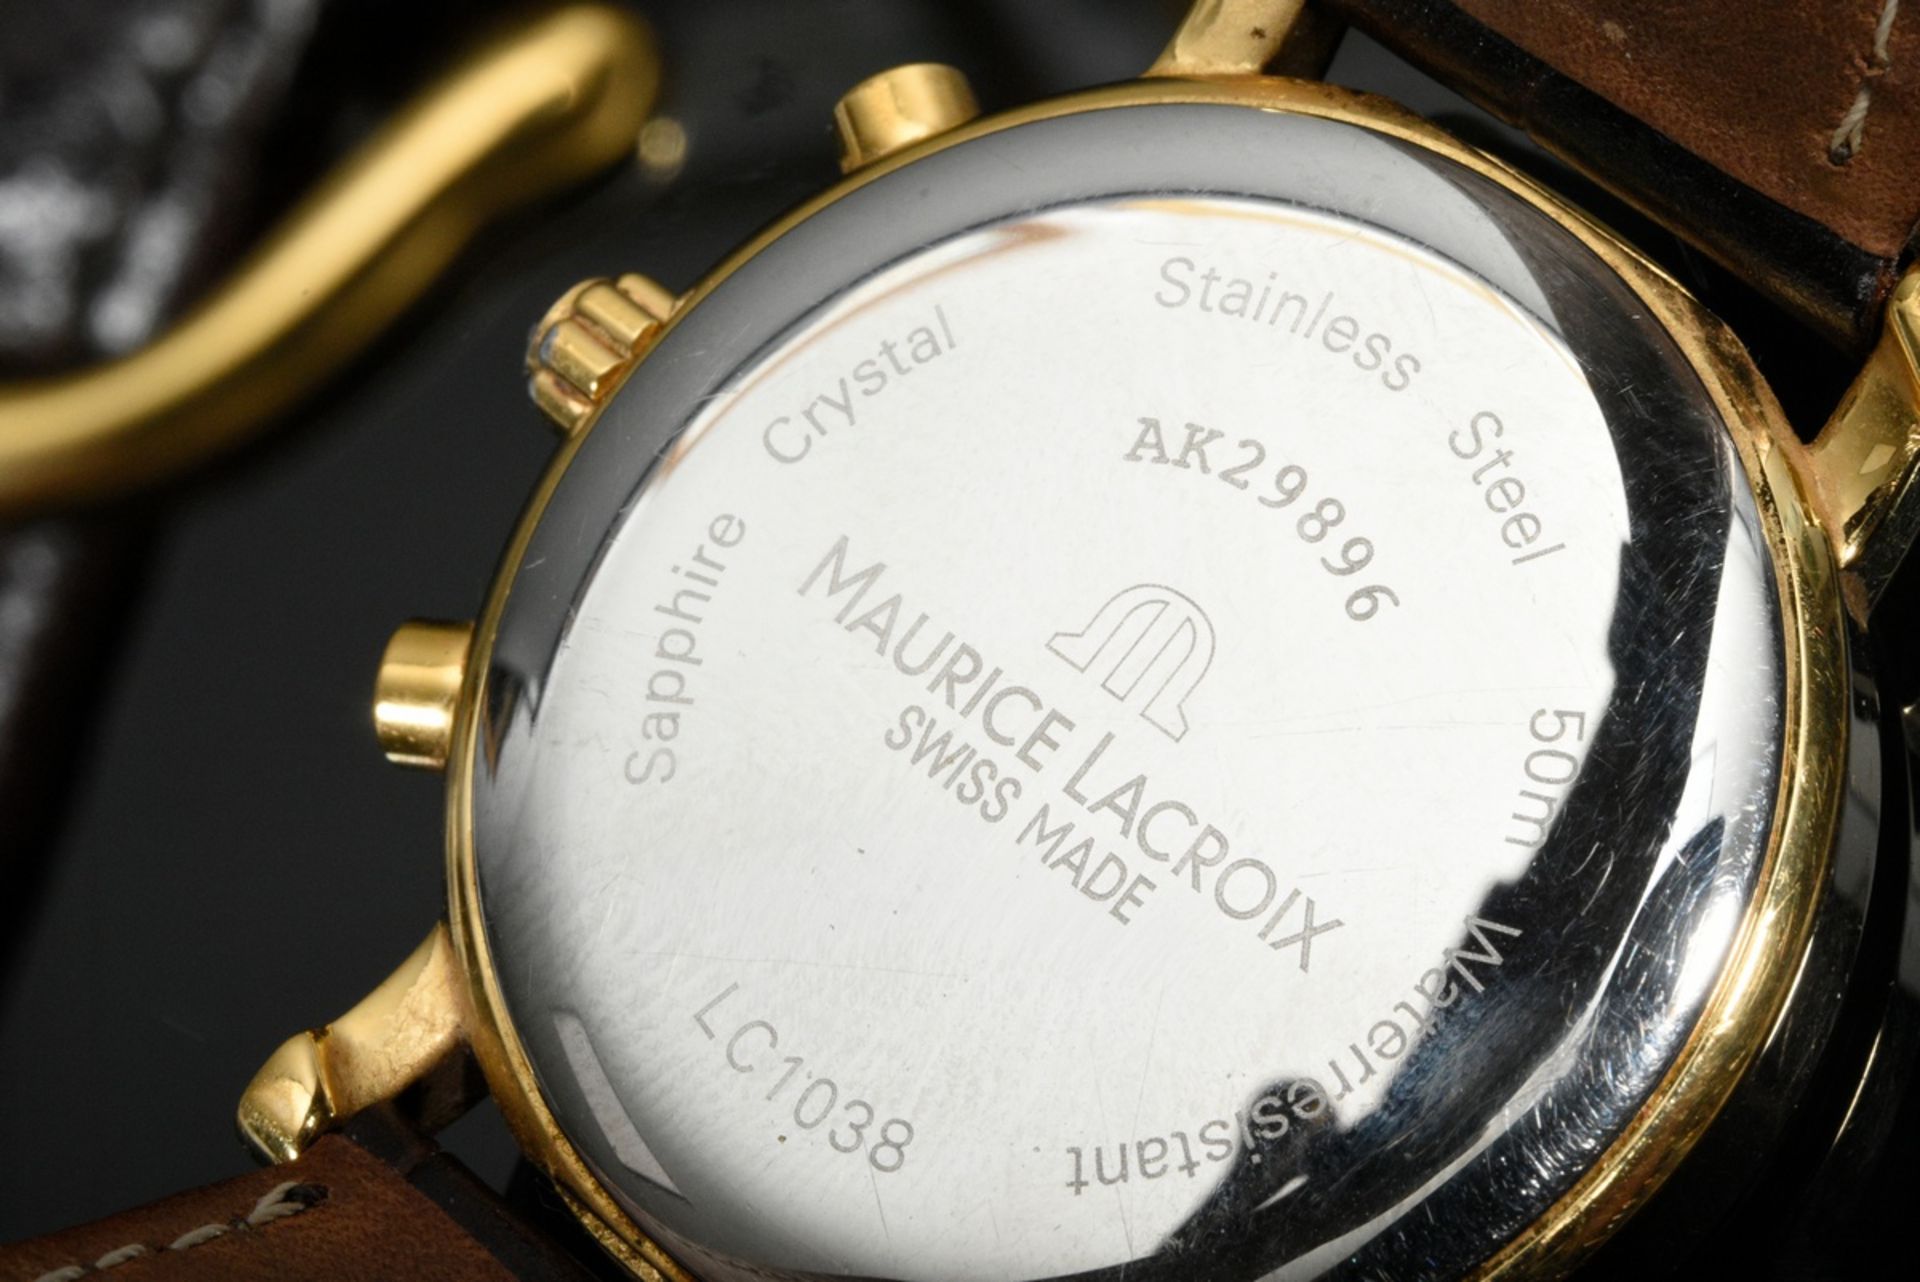 Maurice Lacroix Chronograph Armbanduhr, Edelstahl vergoldet, Emaille Zifferblatt mit römischen Zahl - Bild 3 aus 5